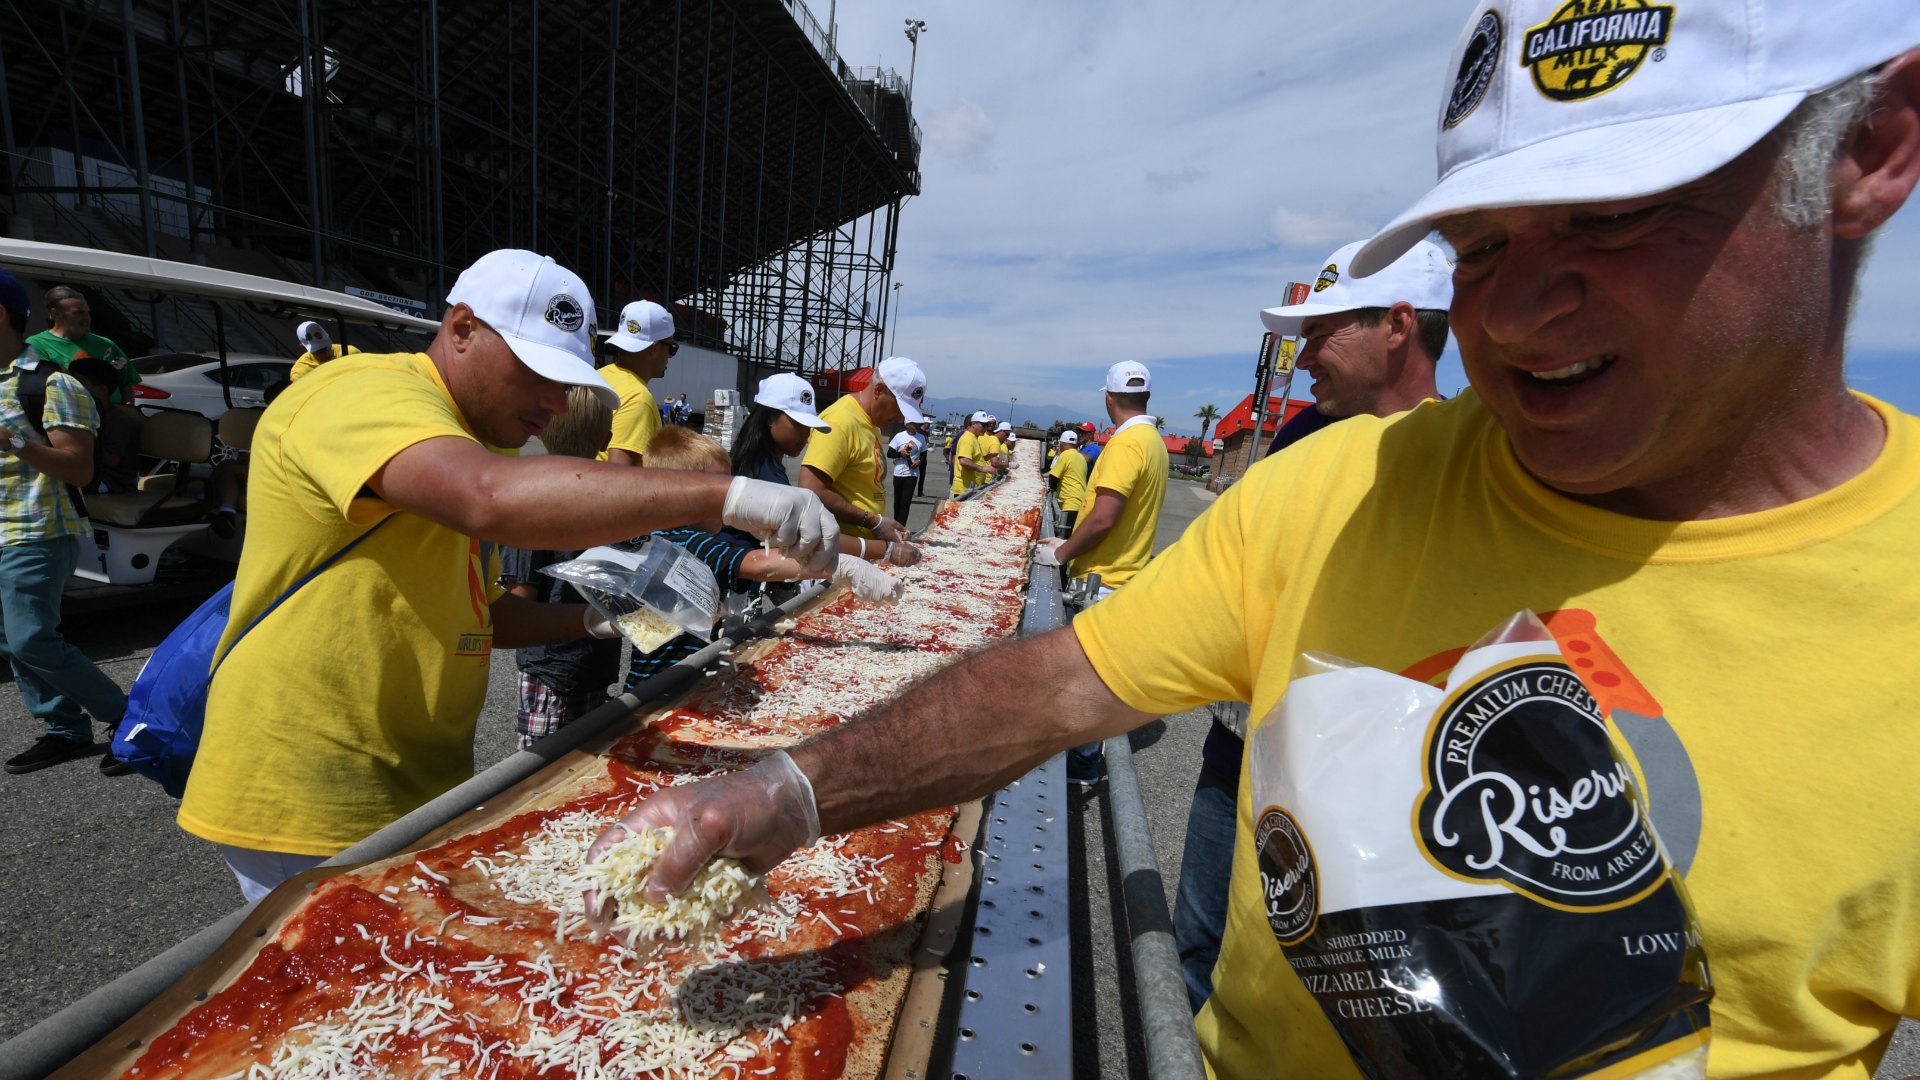 California elabora la pizza más larga del mundo y establece un nuevo récord Guinness